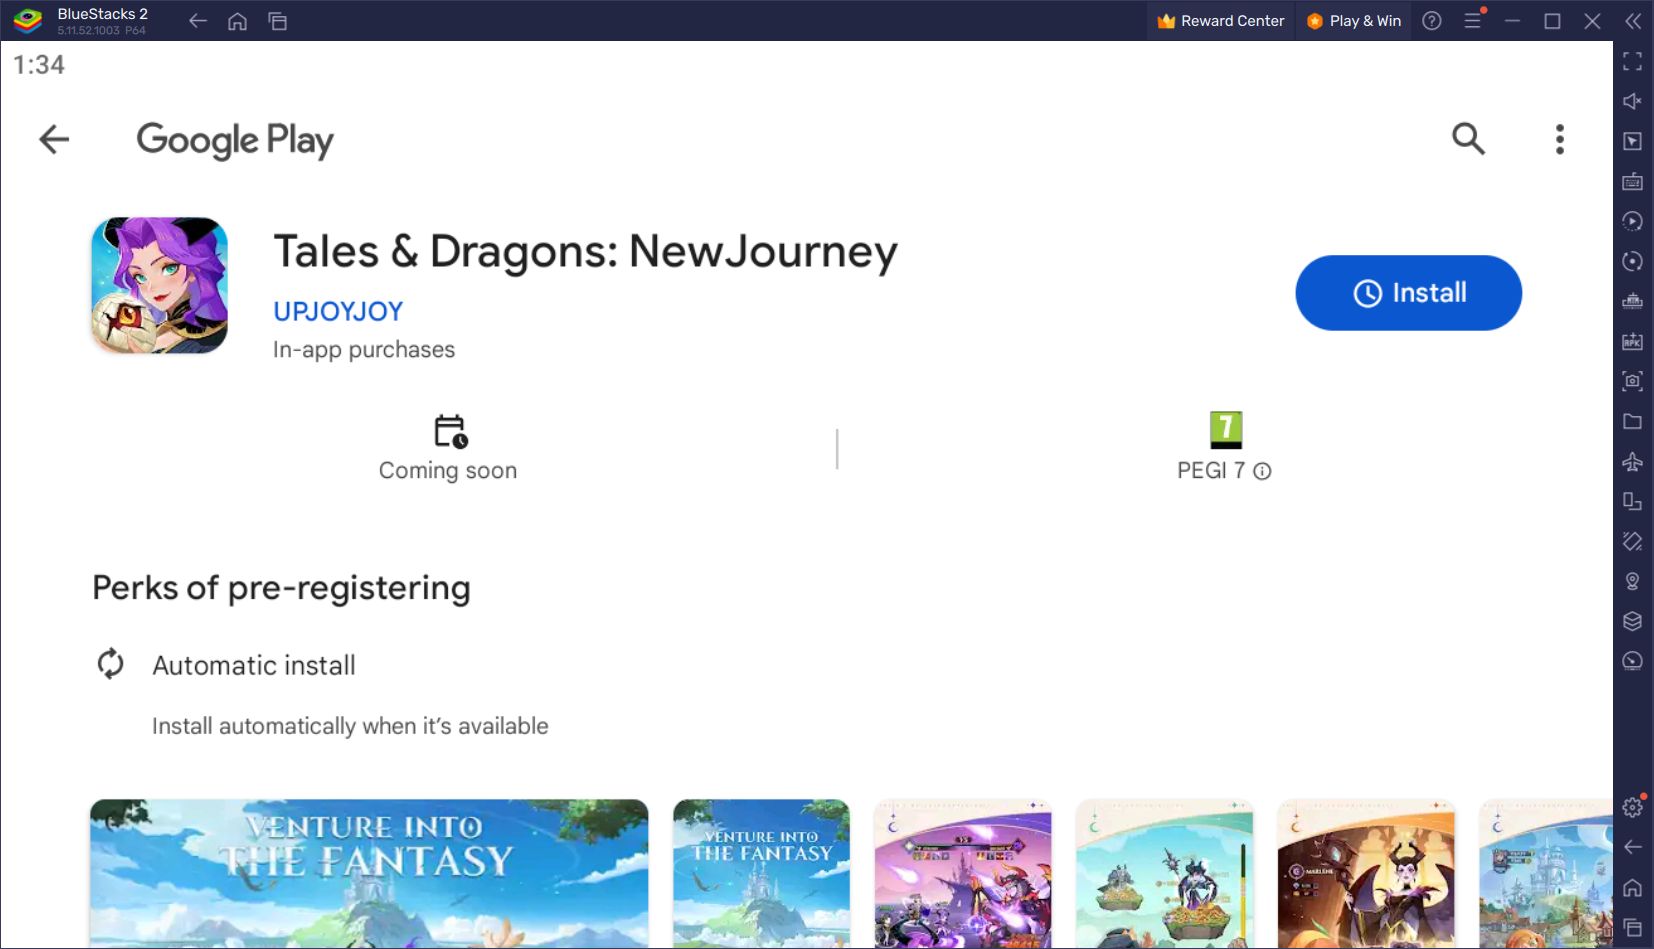 Phiêu lưu vào thế giới fantasy cổ tích trong Tales & Dragons: New Journey trên PC cùng BlueStacks